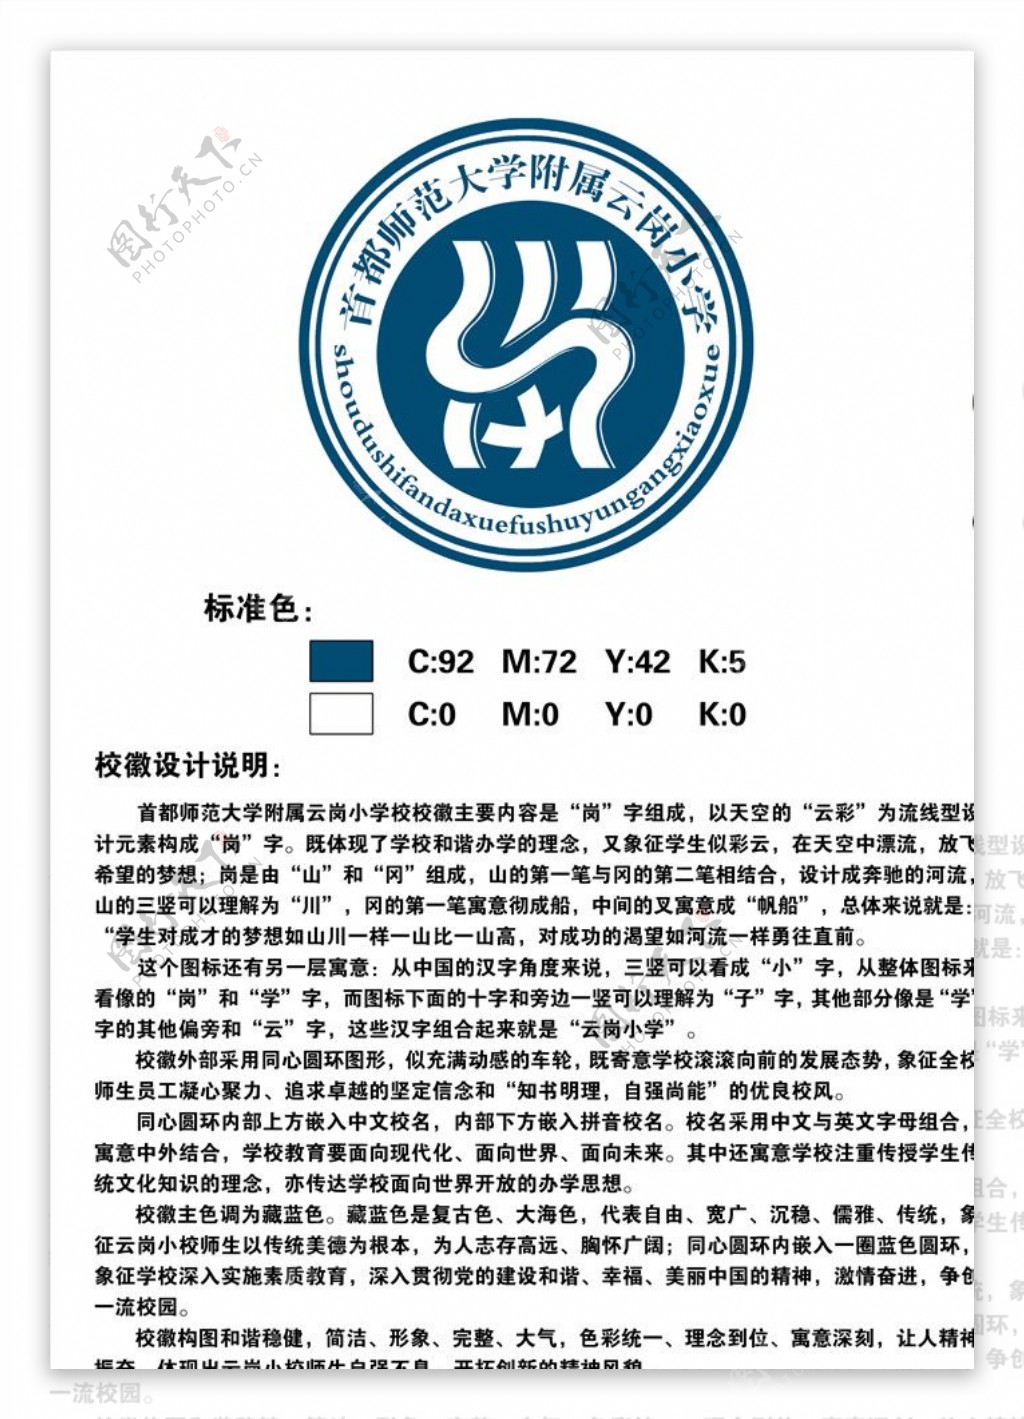 北京首都师范大学附属小学校徽